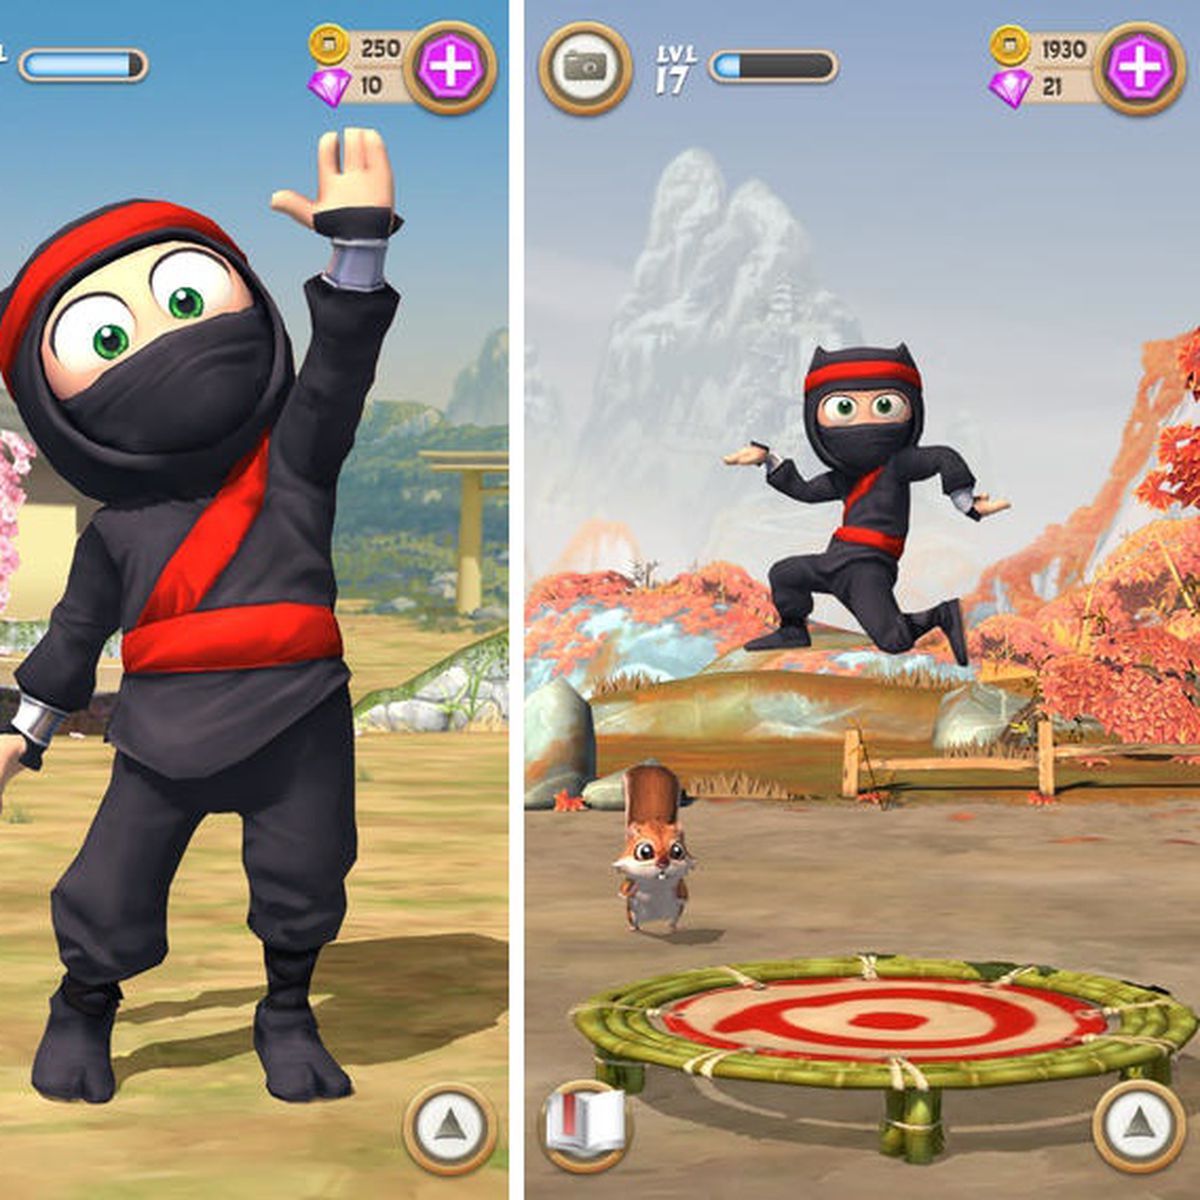 Ninja Must Die for iOS